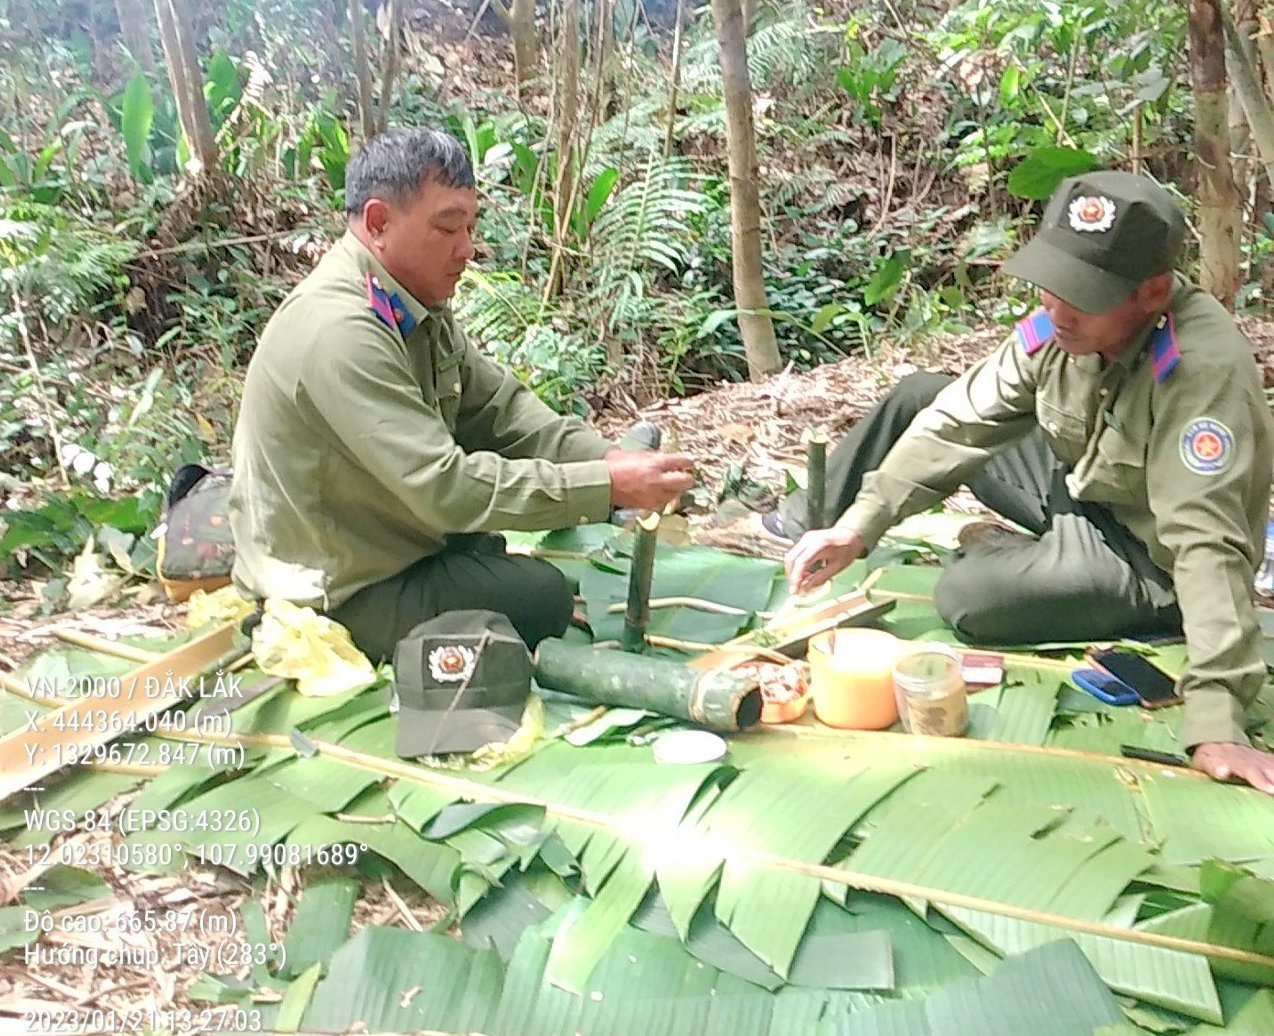 Bữa cơm đạm bạc giữa rừng của lực lượng quản lý bảo vệ rừng ở Đắk Nông. Ảnh: Tây Nguyên